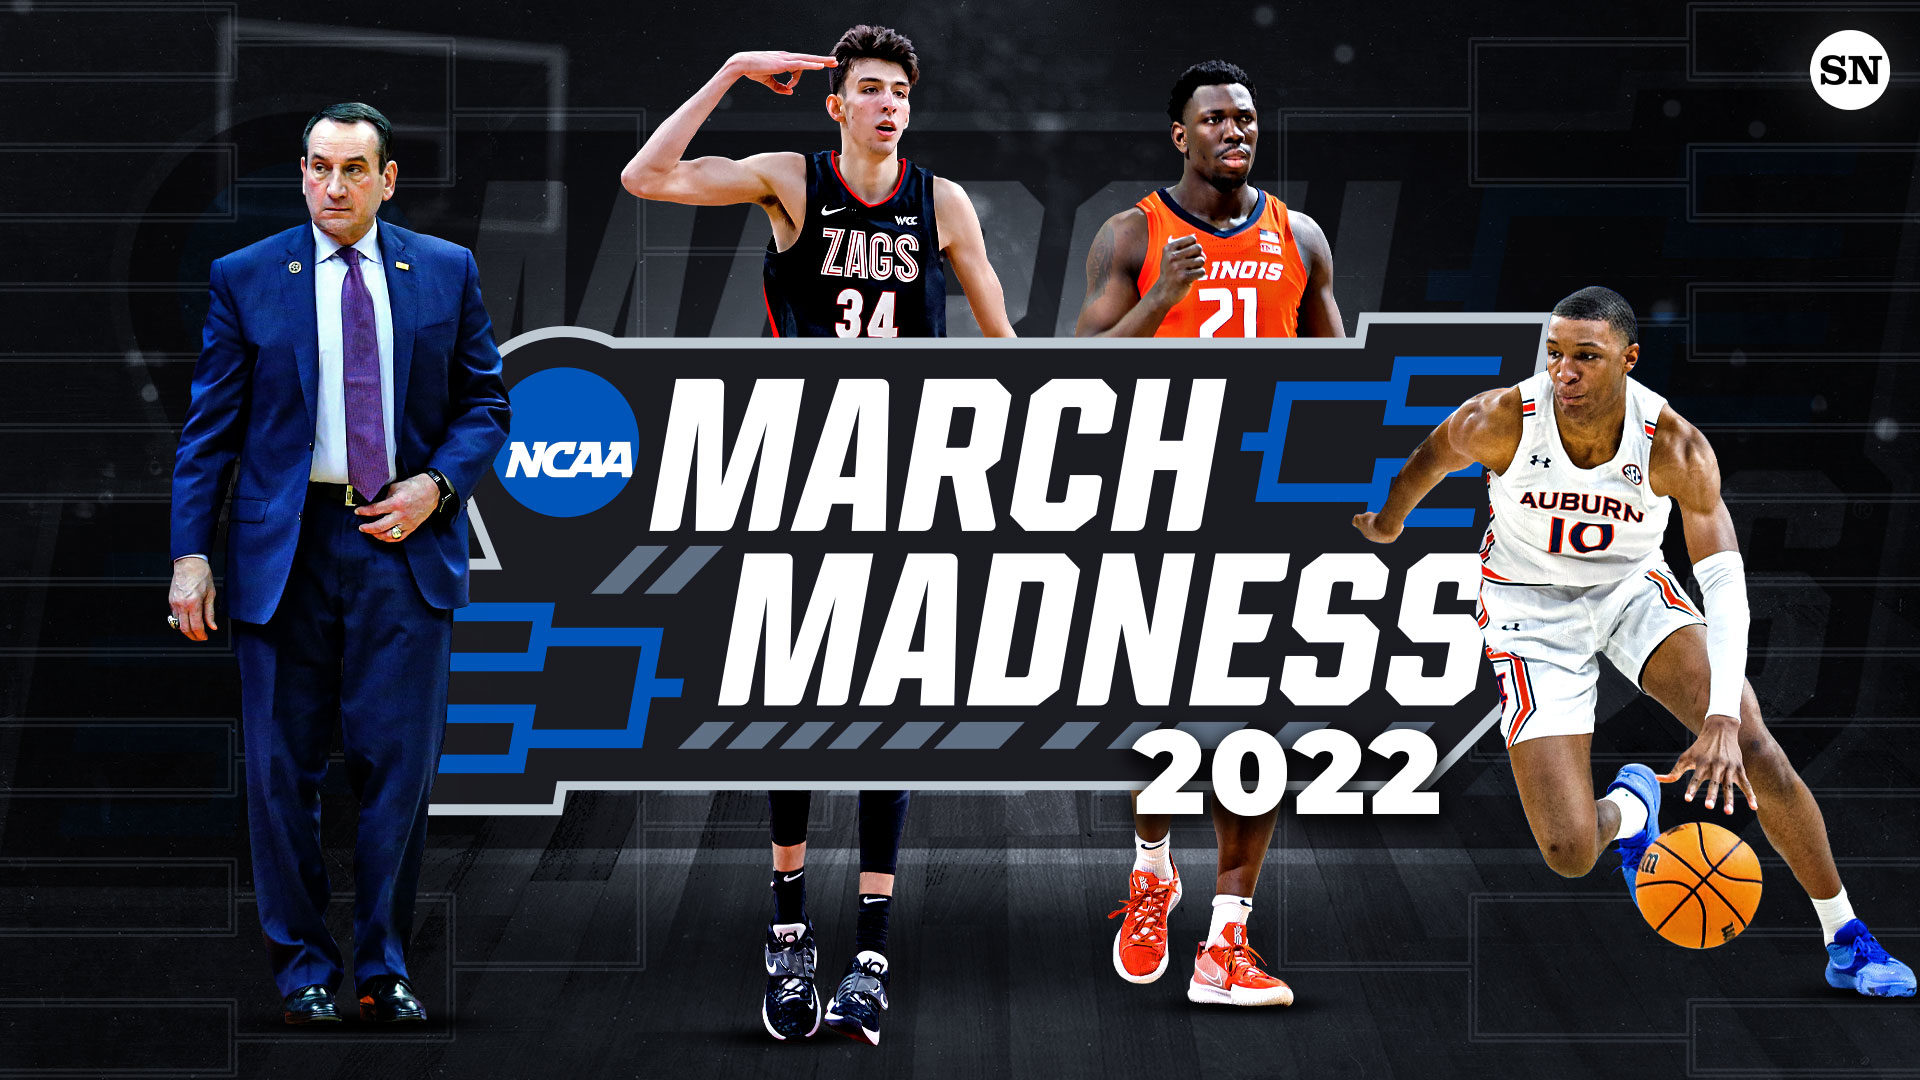 La batalla por el trono de la NCAA: March Madness 2022